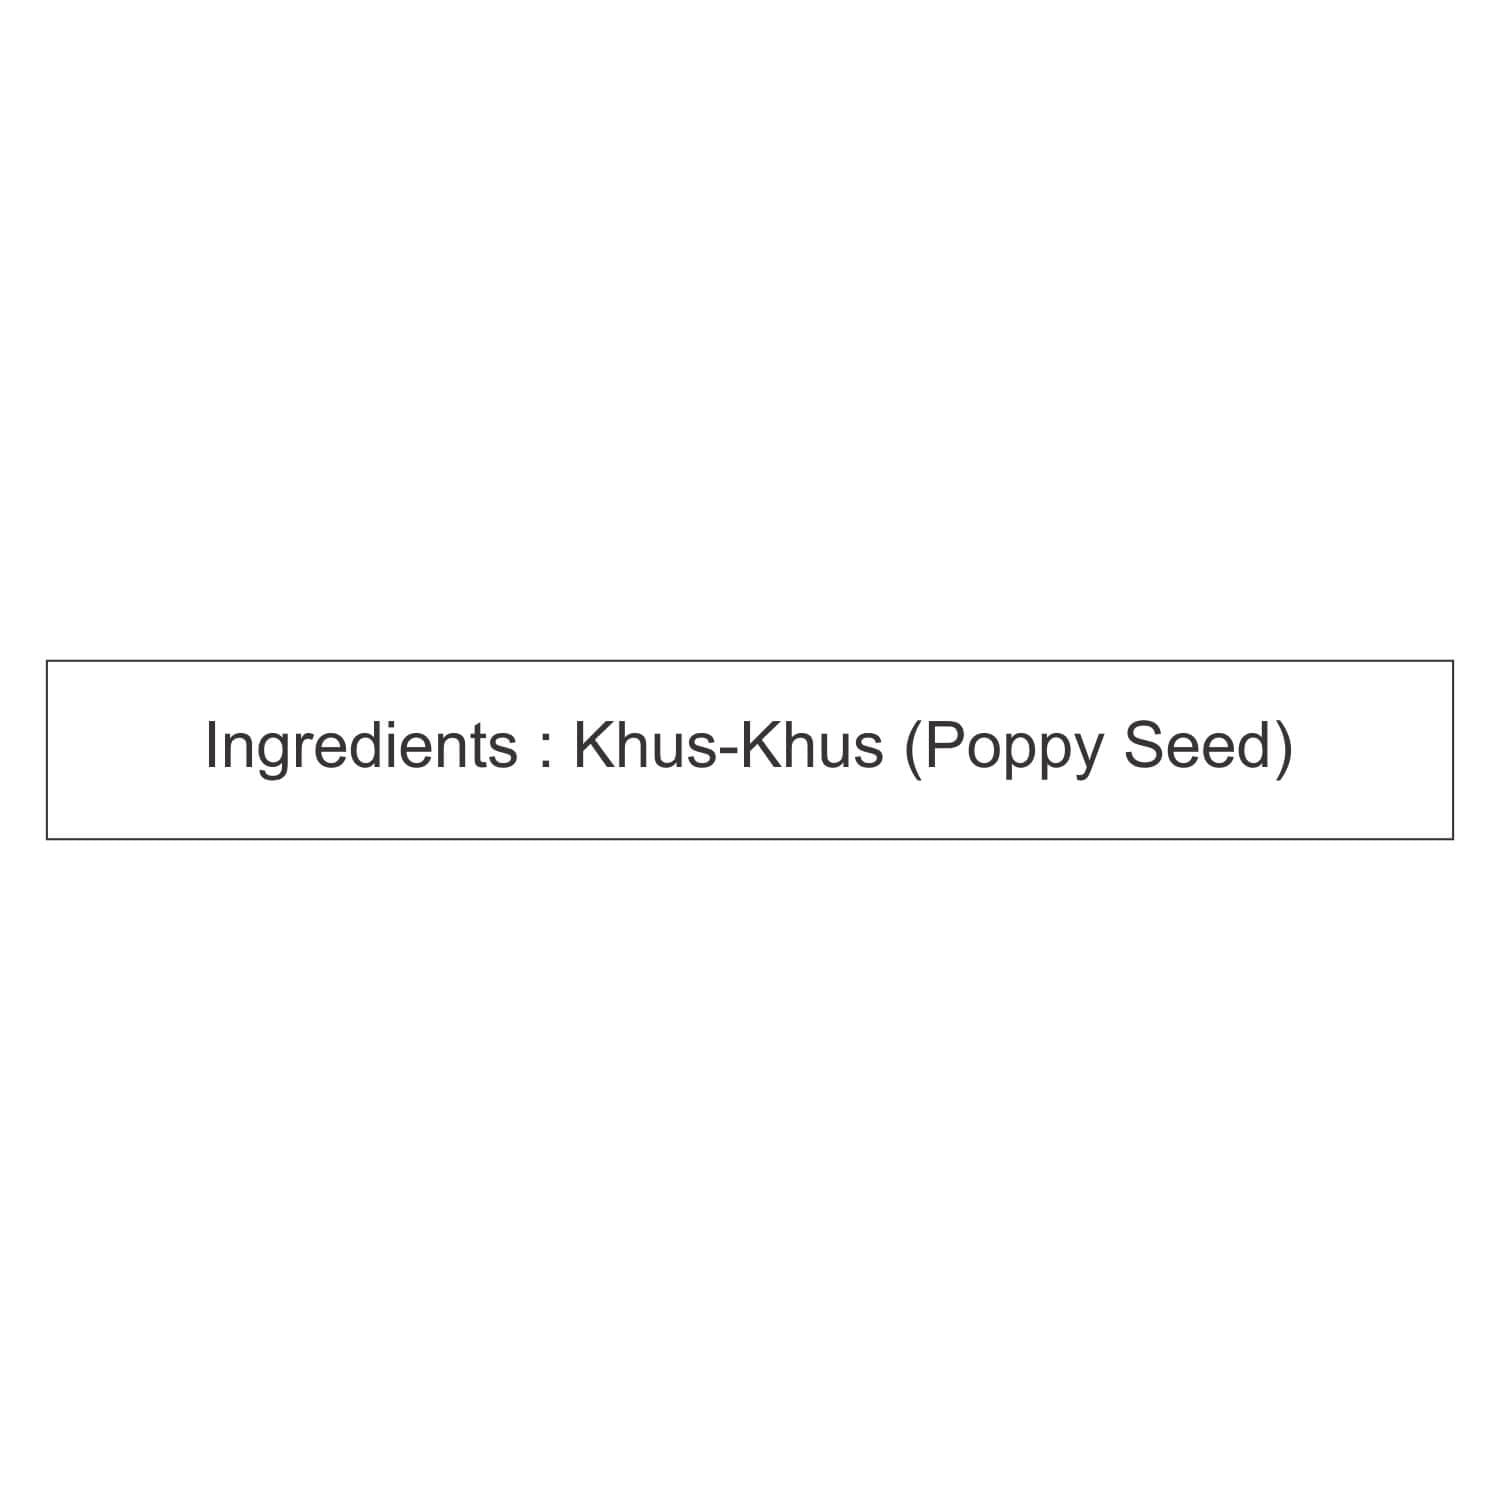 Nutraj Khus Khus (Poppy Seeds) 100g